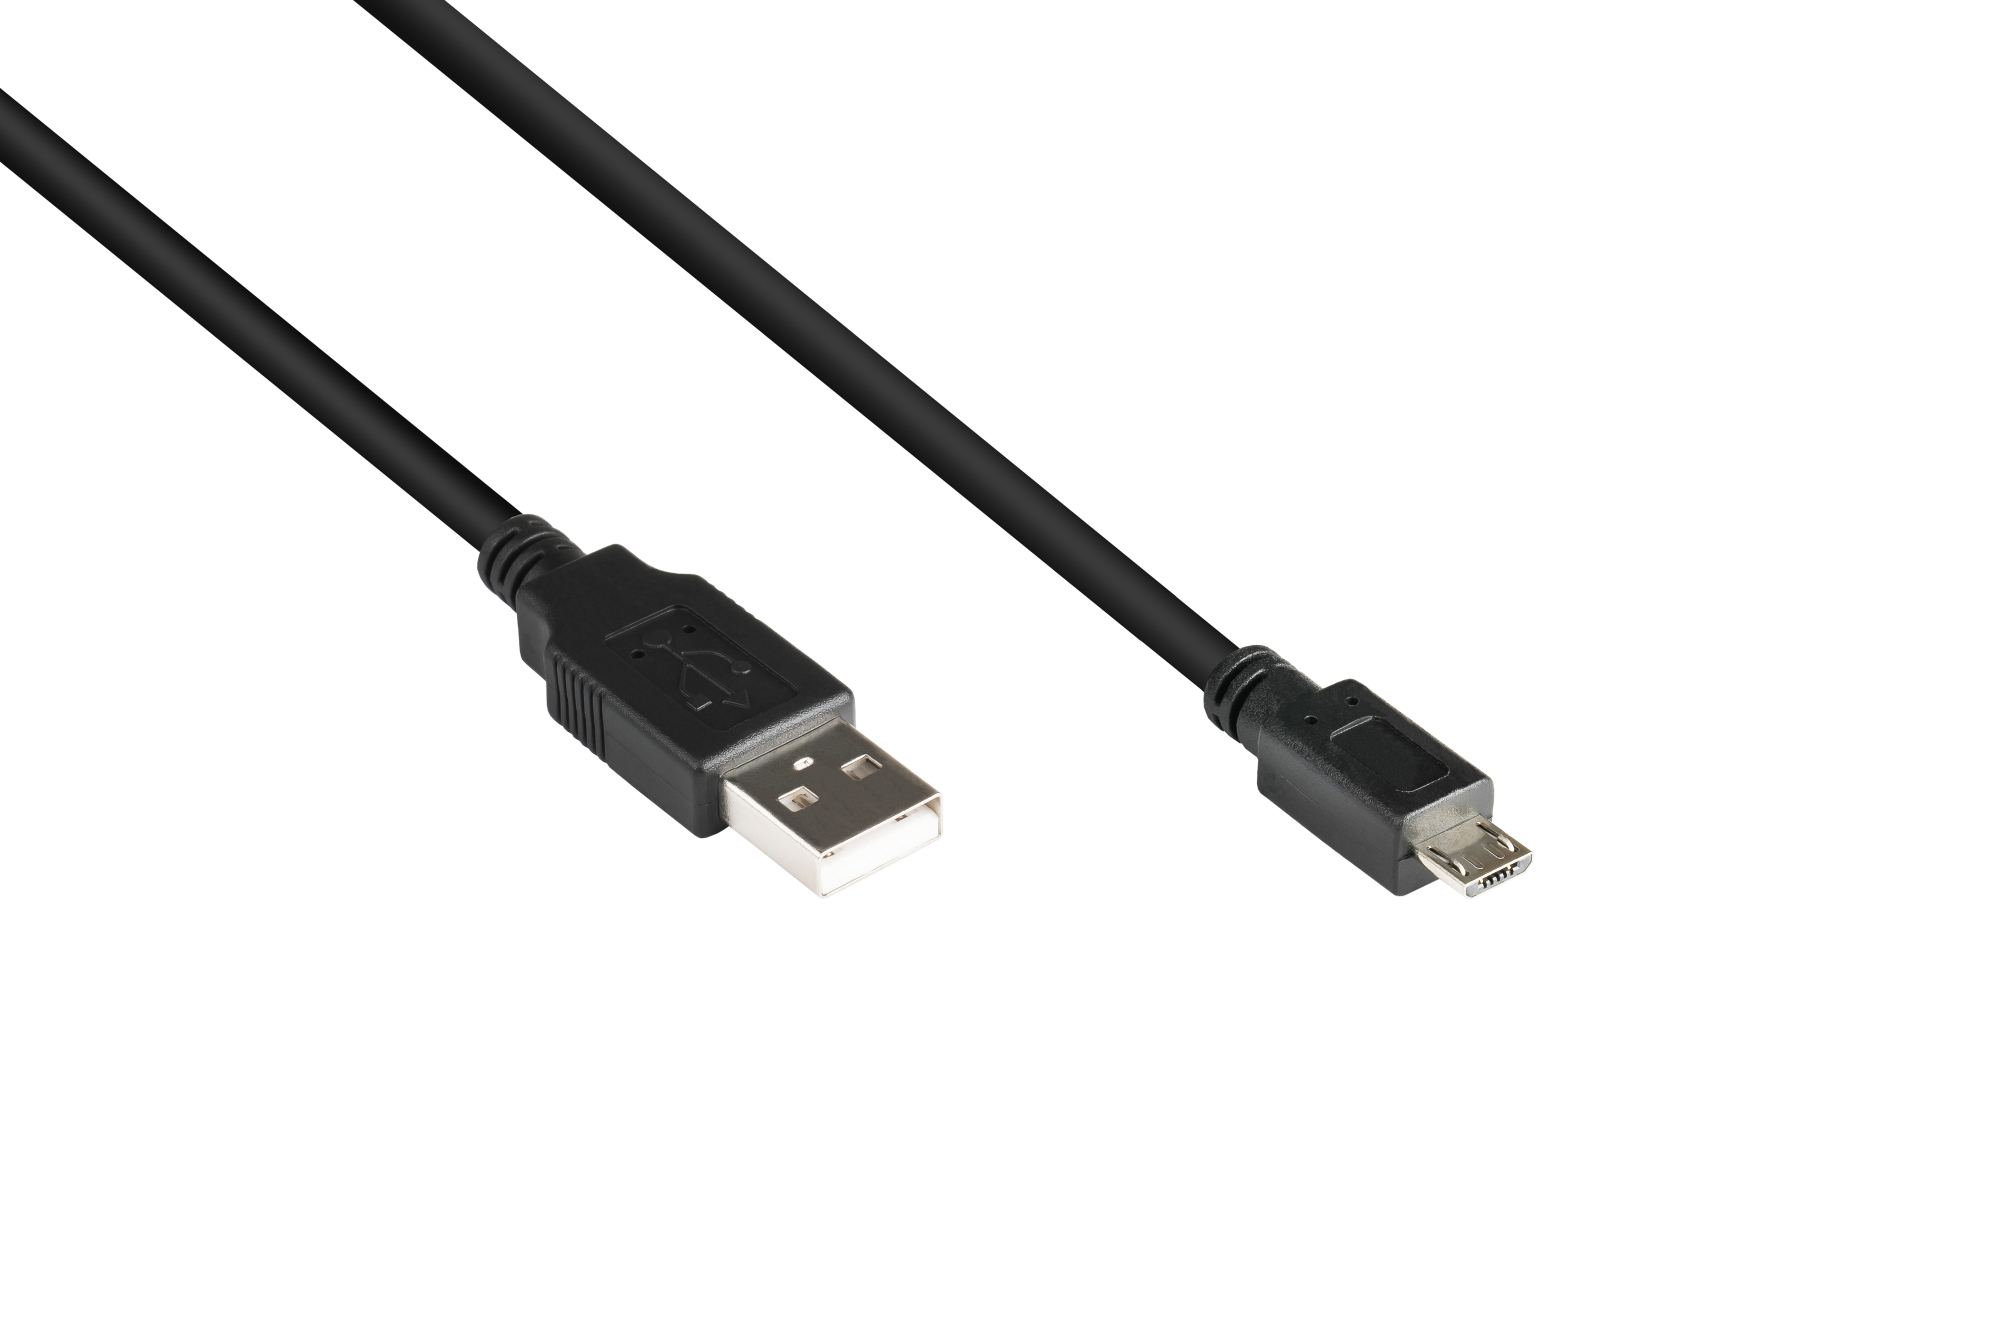 Anschlusskabel USB 2.0 Stecker A an Stecker Micro B, schwarz, 0,15m, Good Connections®